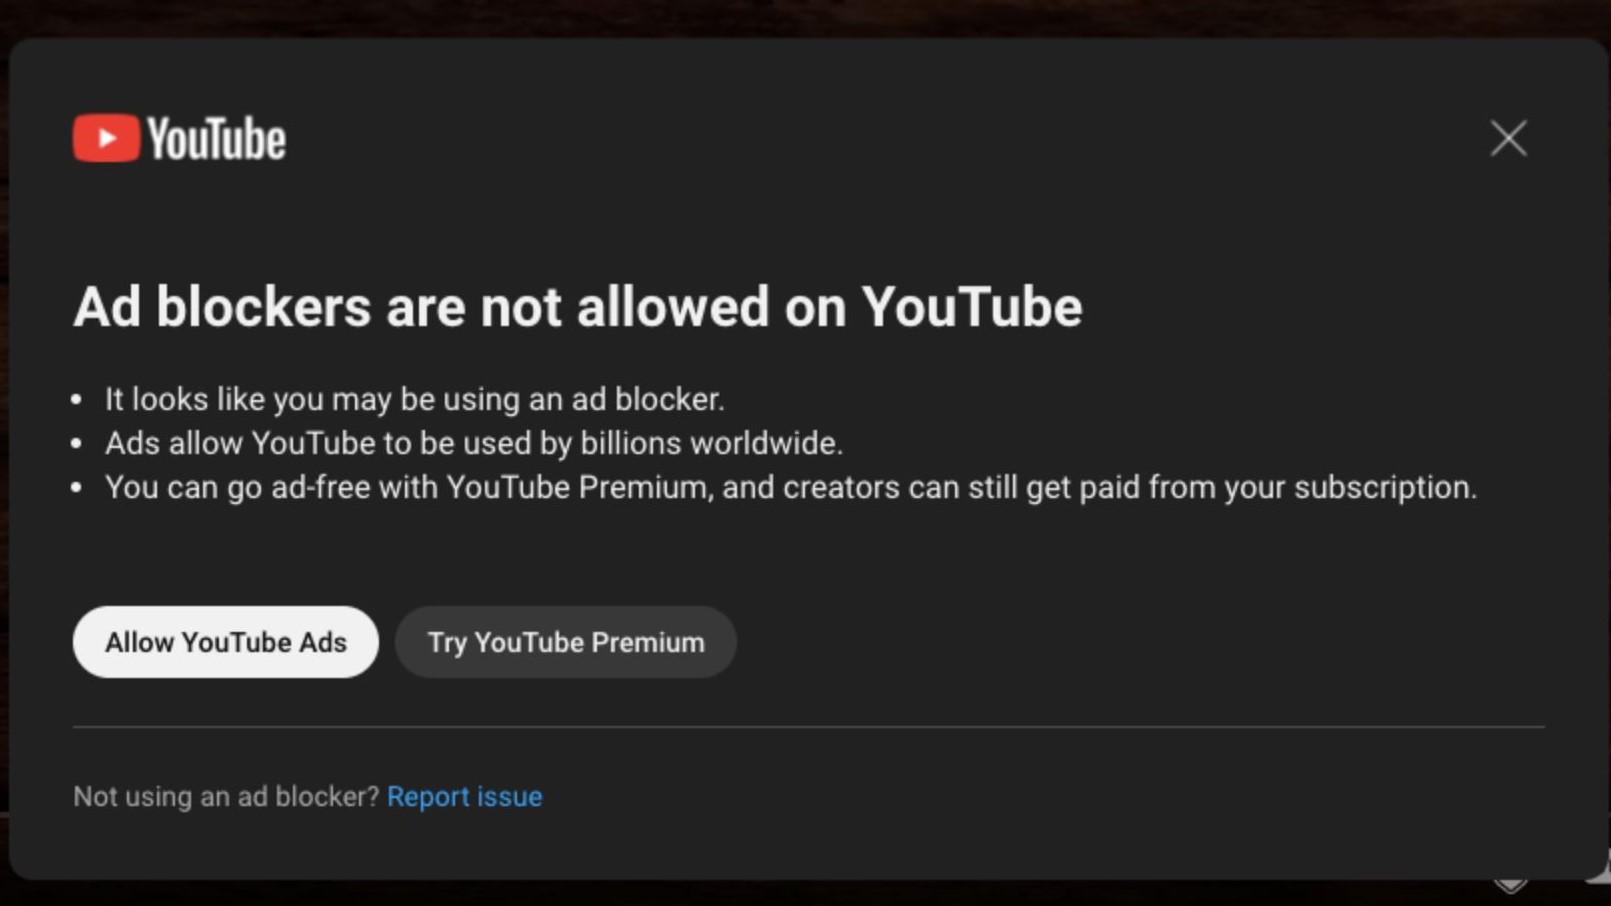 Imagen de Pop-up de YouTube para desactivar bloqueadores de publicidad